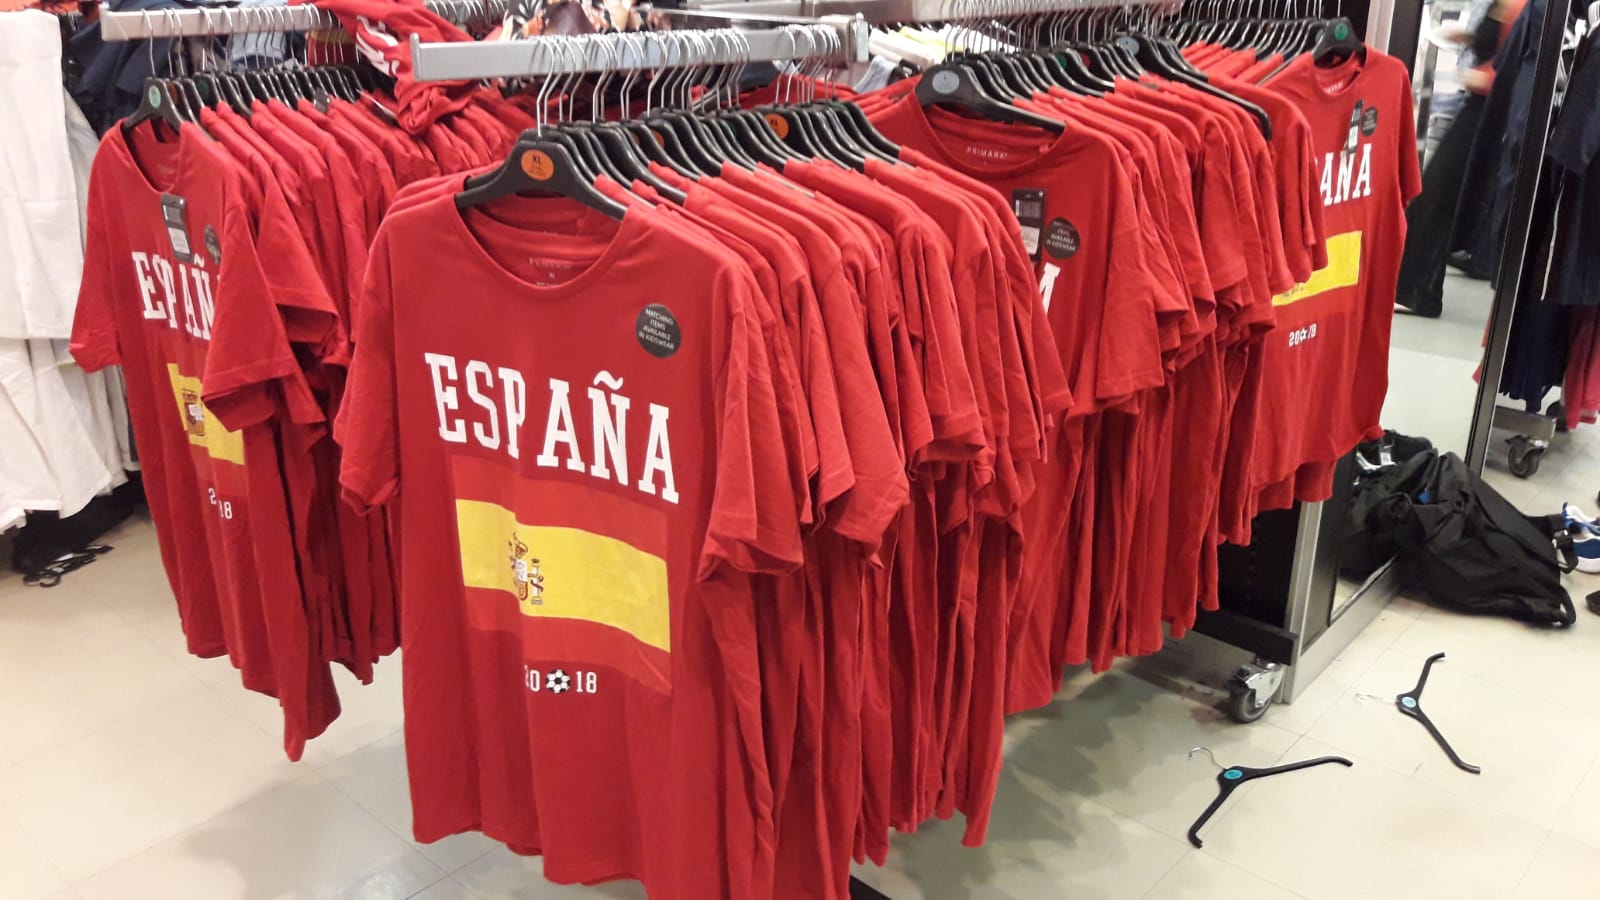 Consulado Controlar poetas Primark ya vende las camisetas y propagandas españolas en Cataluña |  Lasvocesdelpueblo